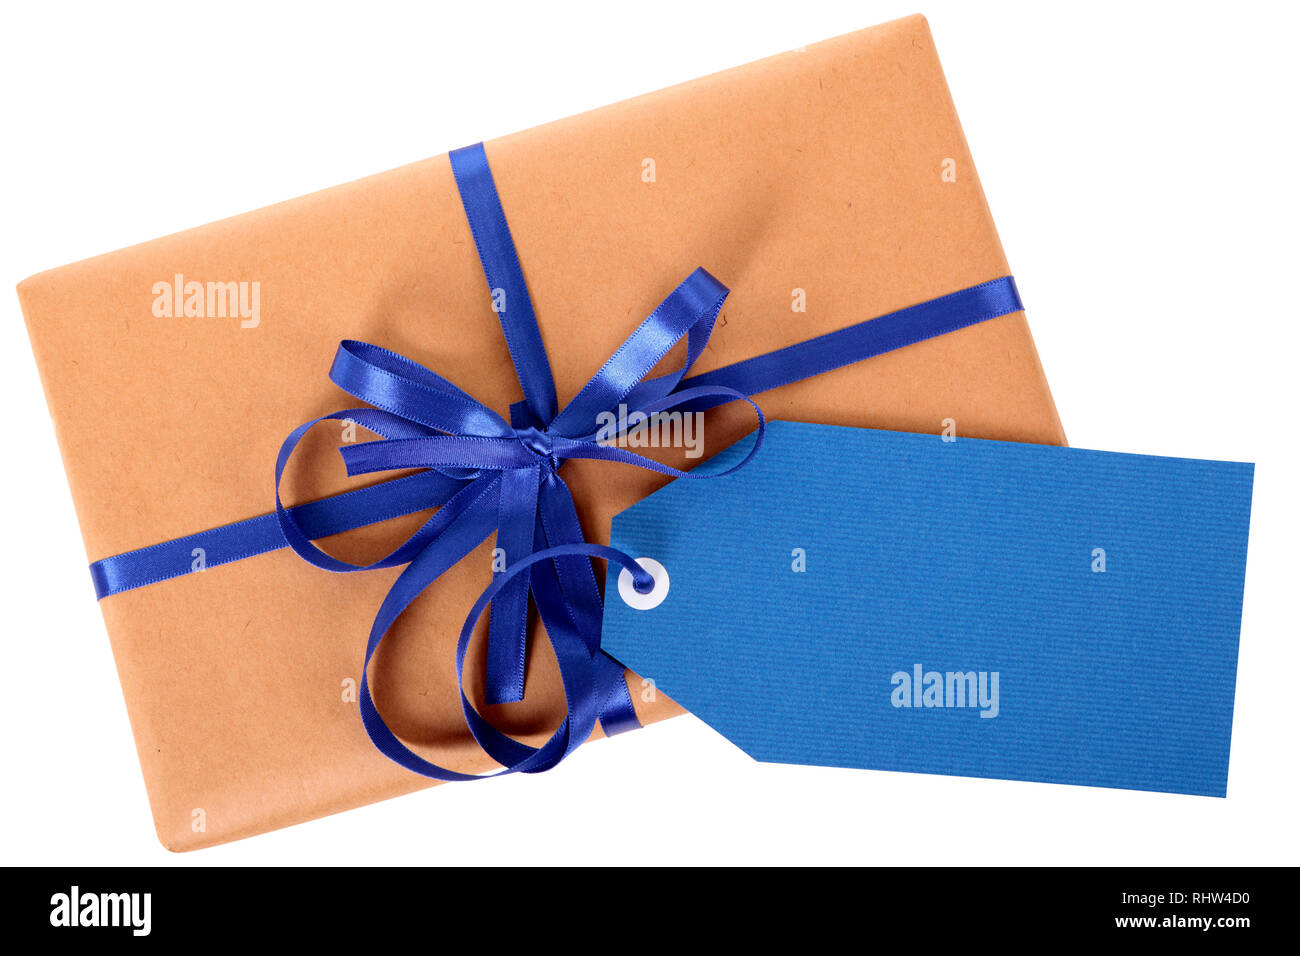 Einfachen braunen Papier Paket oder Paket, blau Geschenk Tag oder Etikett und Farbband auf weißem Hintergrund, Ansicht von oben Stockfoto